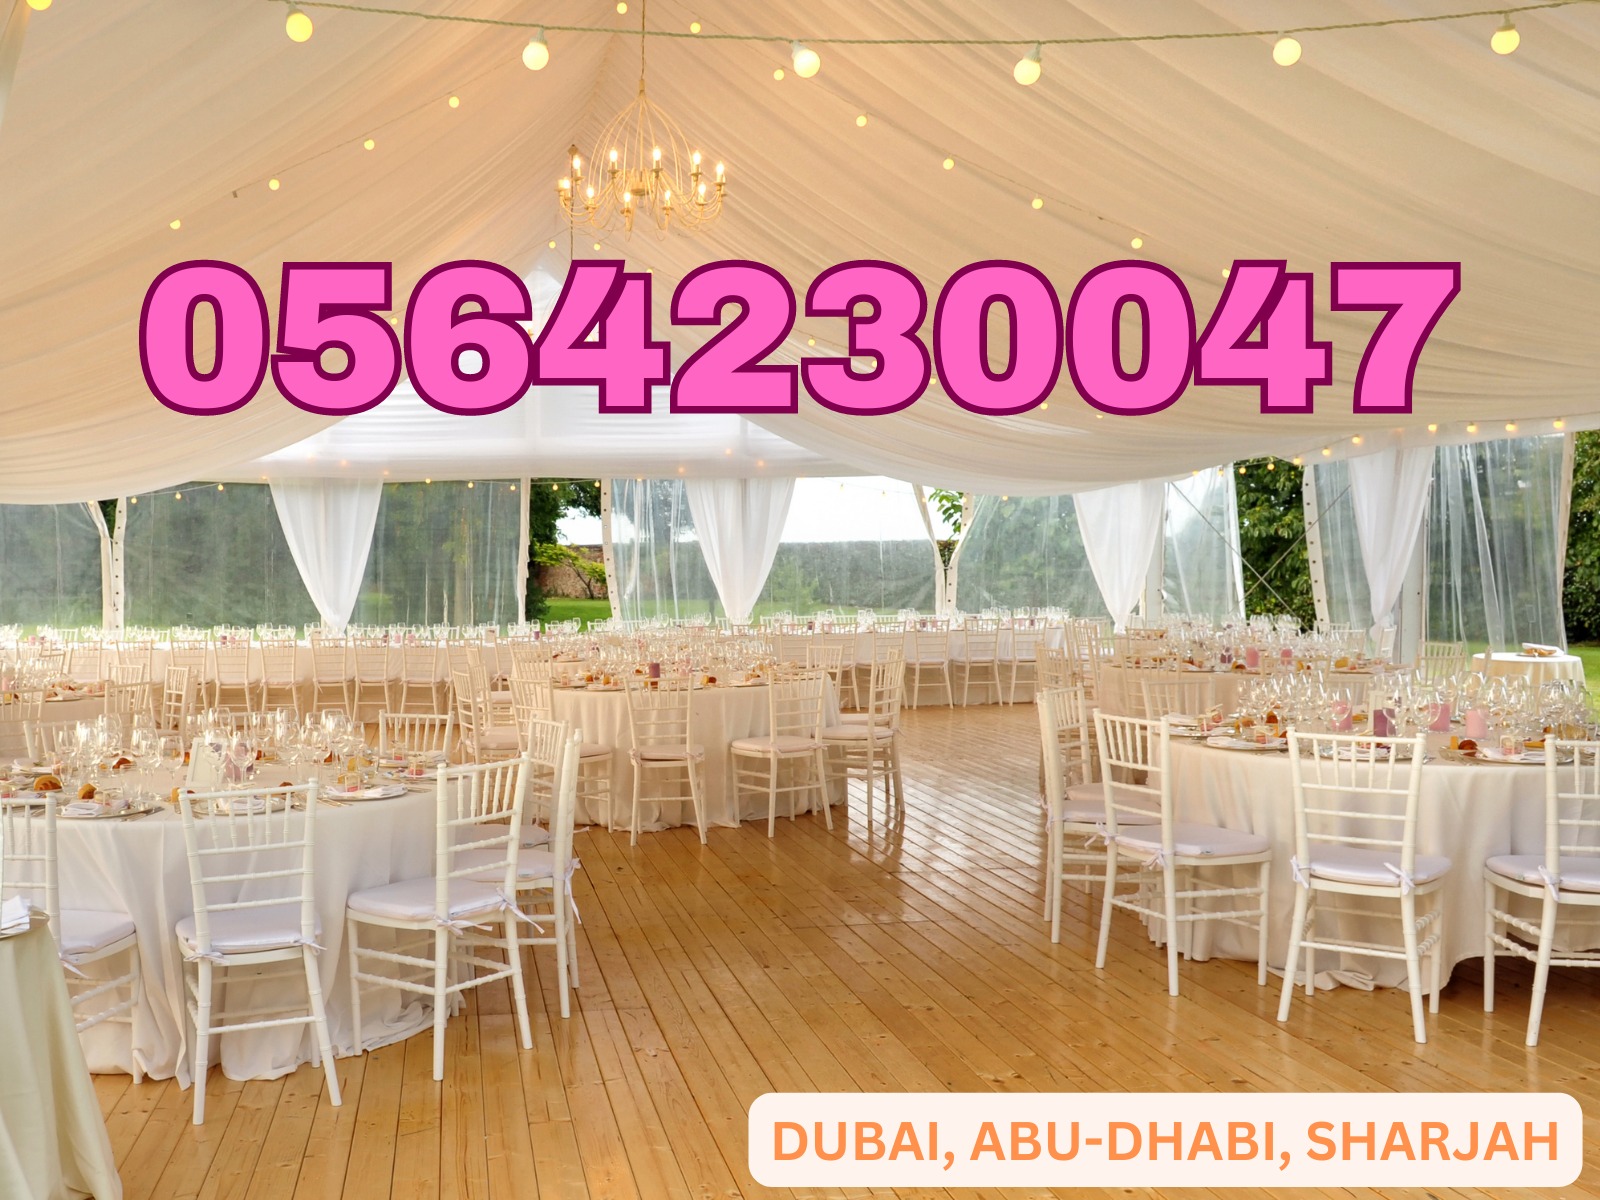 تجربة لا تُنسى مع مستلزمات حفلاتنا! ???? احجز الآن واستمتع بأفضل الكراسي والطاولات. #حفلات_دبي